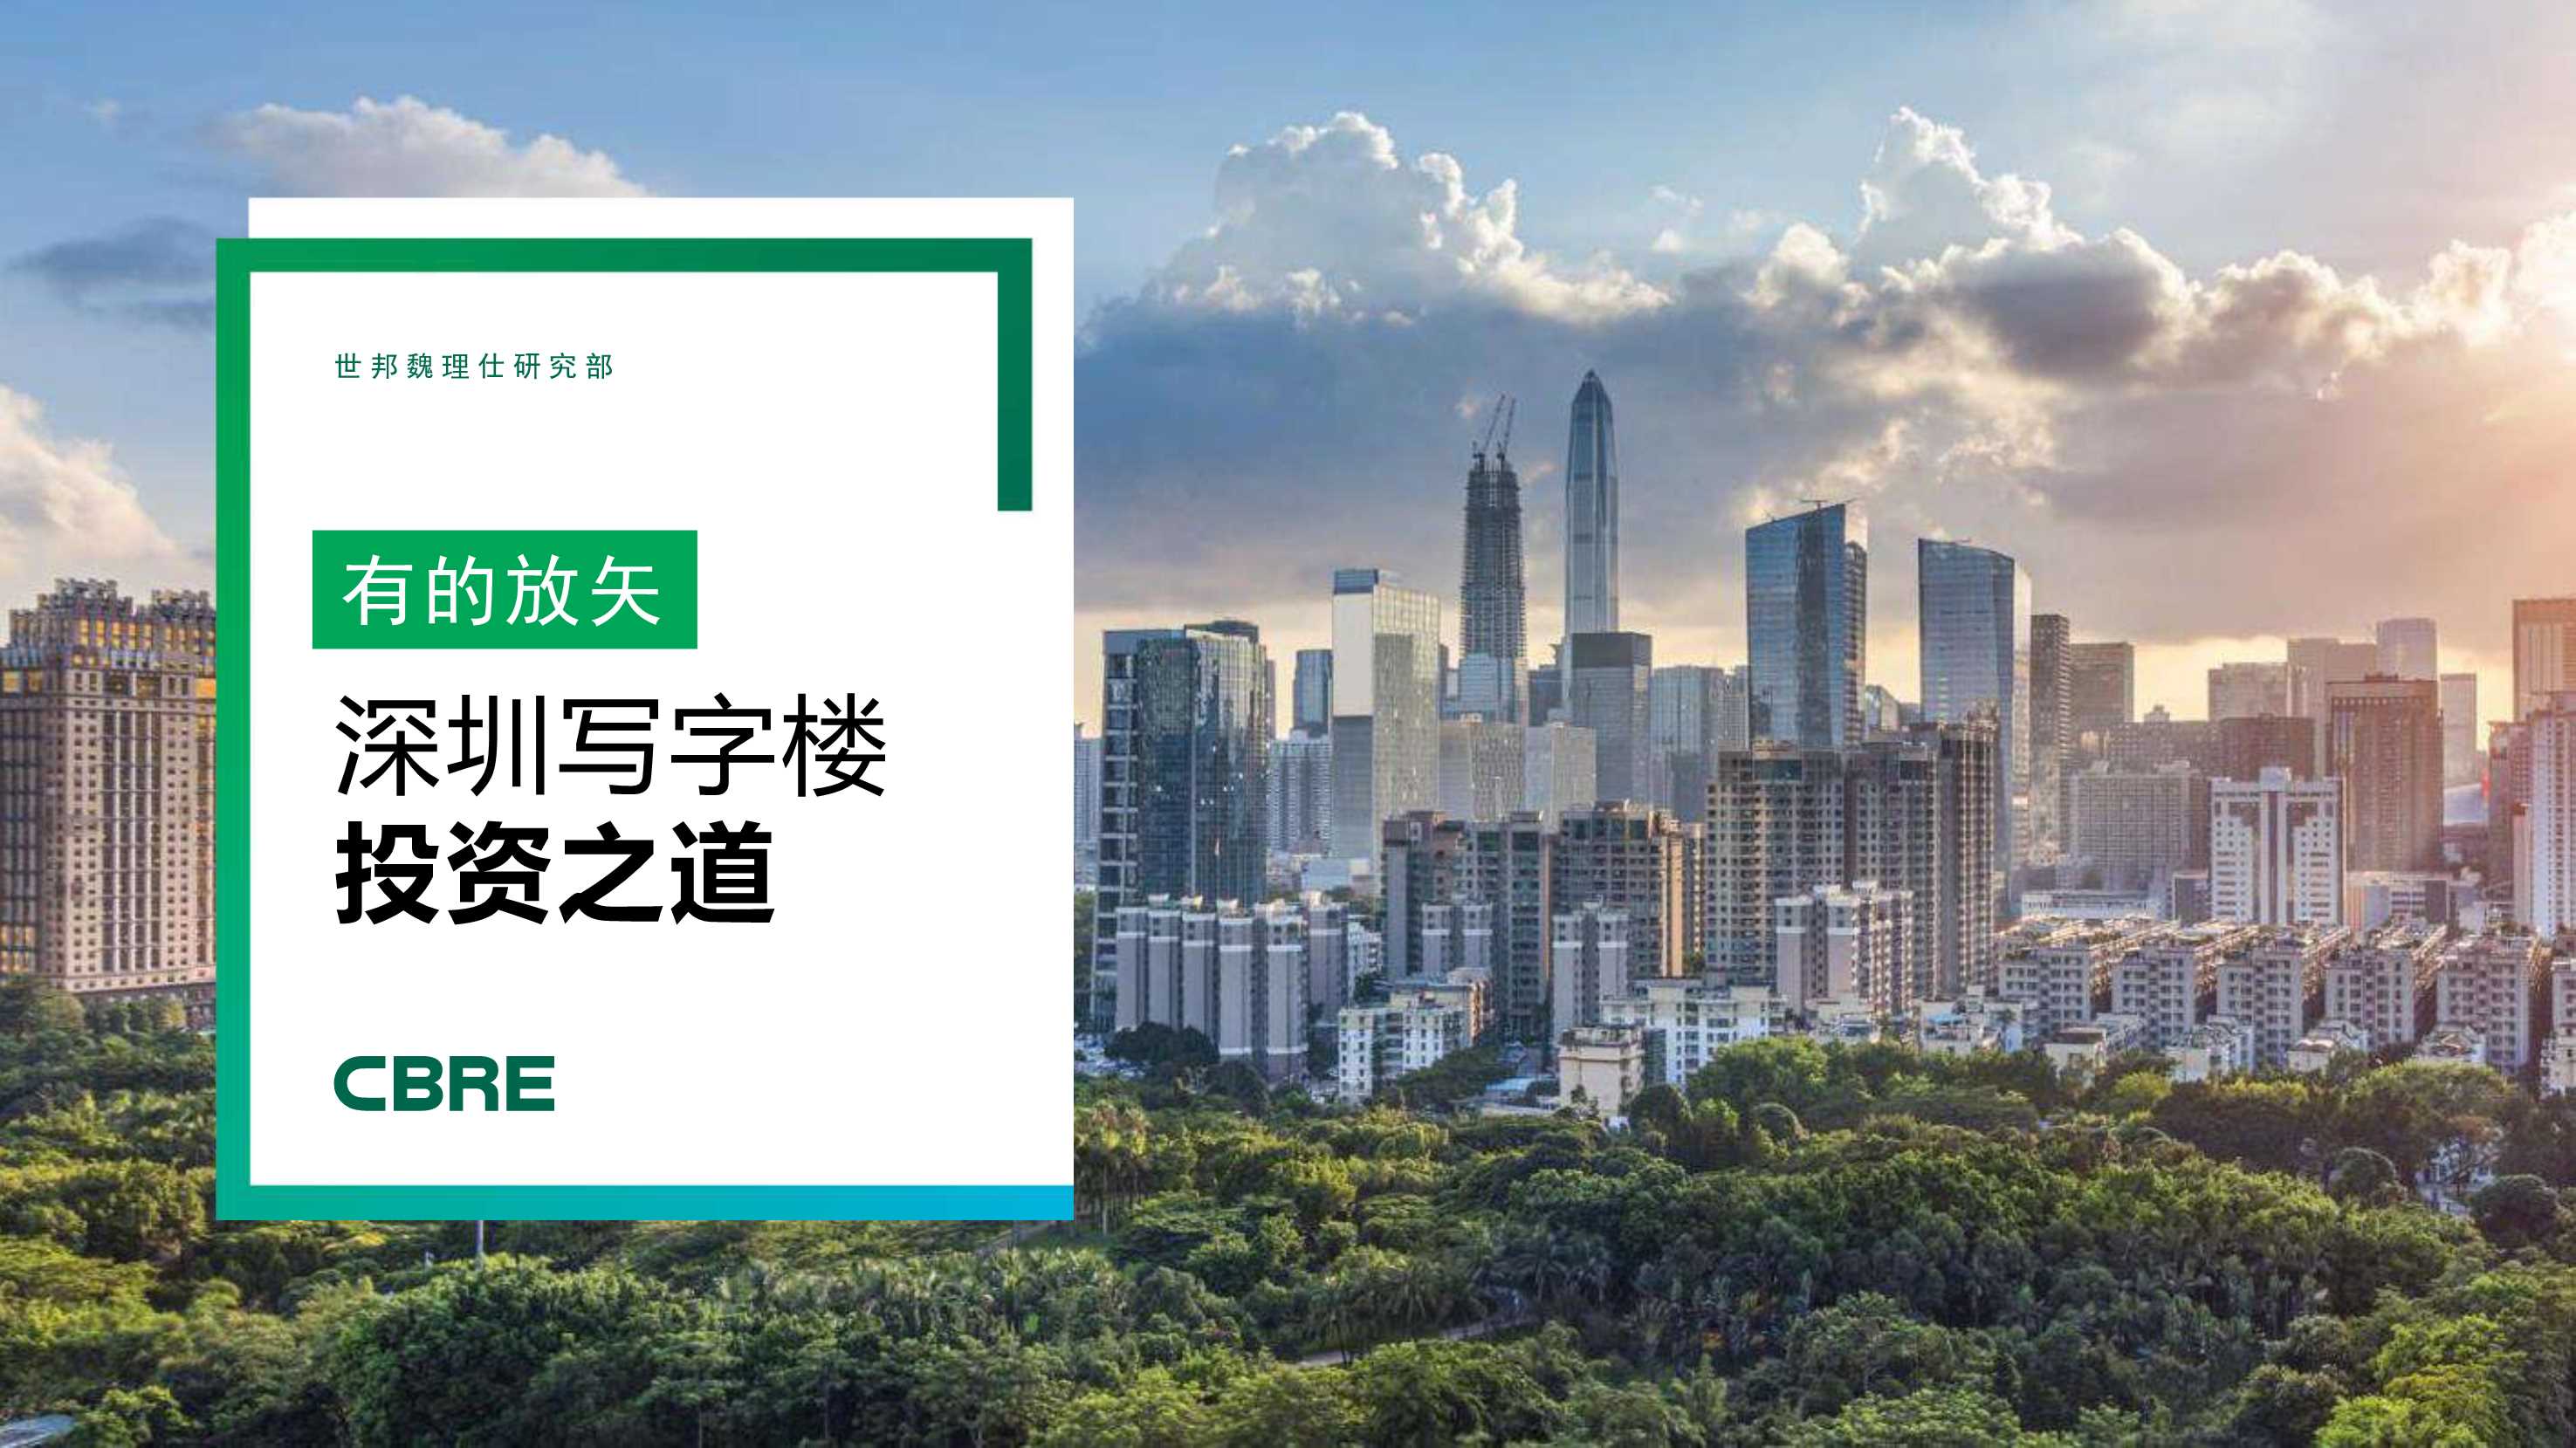 CBRE-2021 深圳写字楼投资报告-2021.09-11页